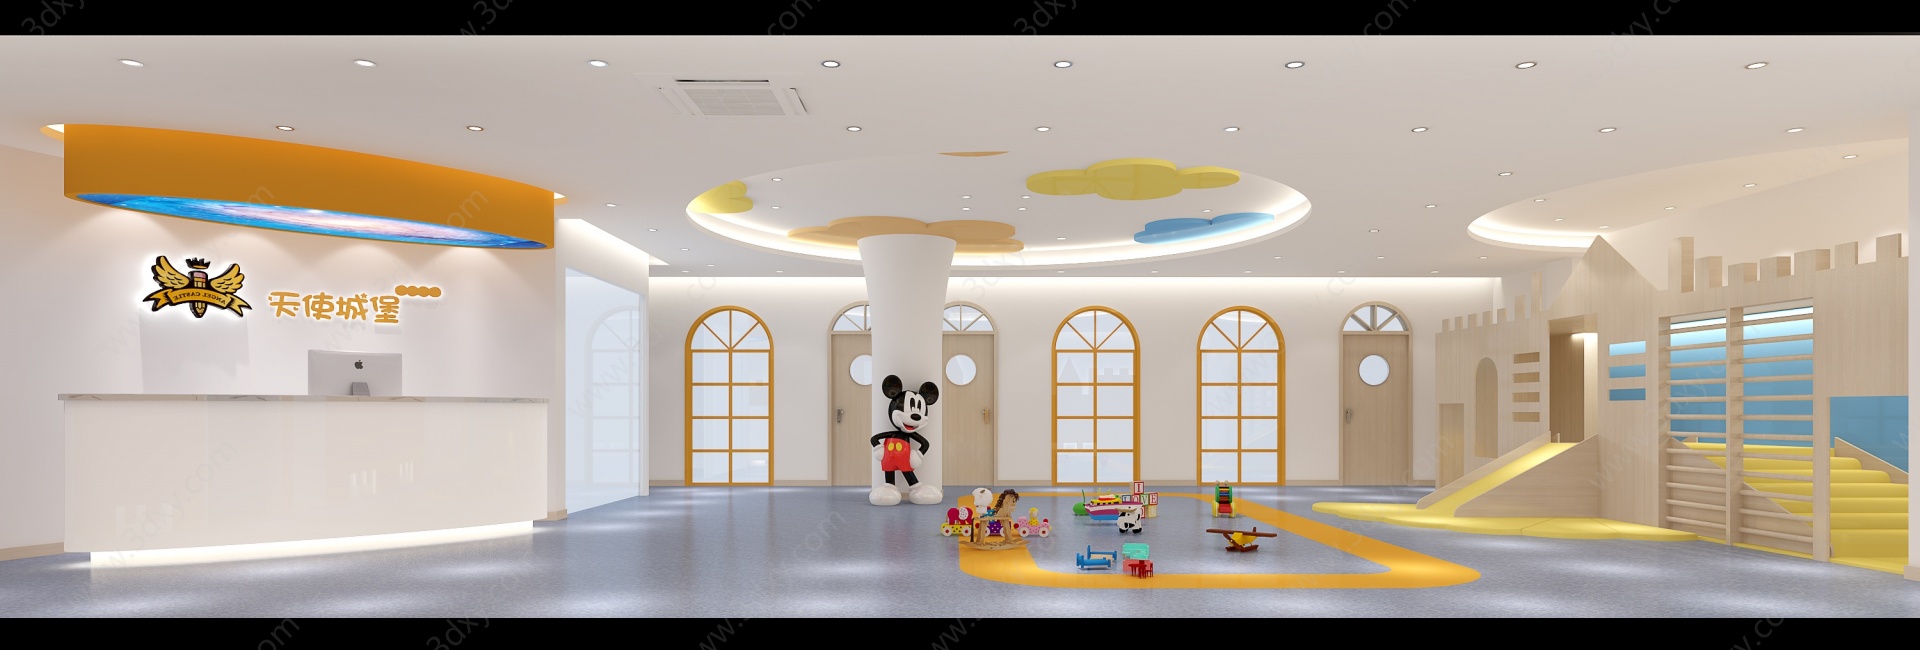 现代幼儿园游乐活动区3D模型